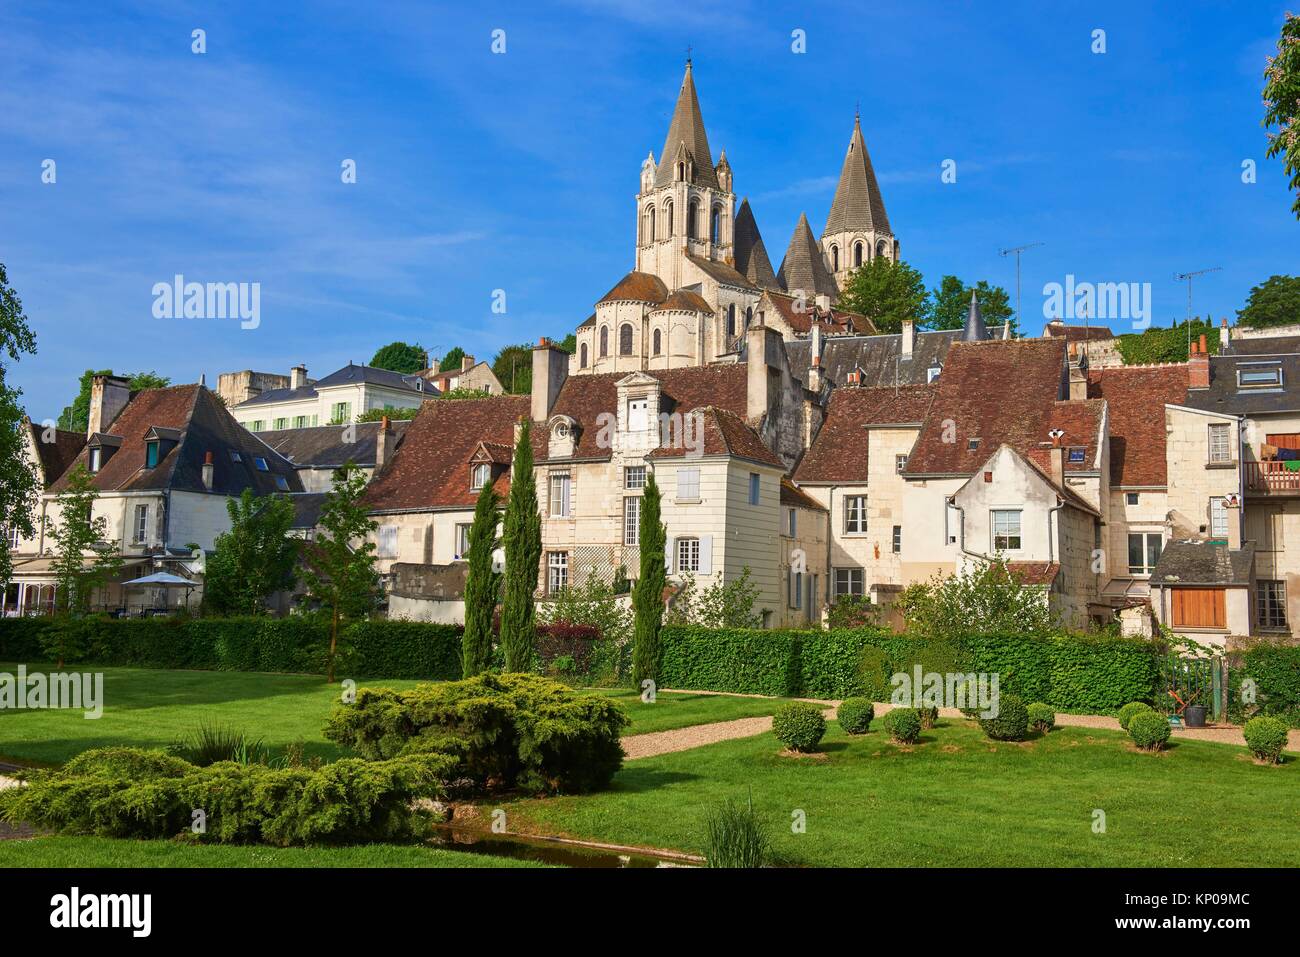 Loches, Saint Ours Church at Dusk, Indre-et-Loire, Touraine, Pays de la Loire, Loire Valley, UNESCO World Heritage Site, France. Stock Photo